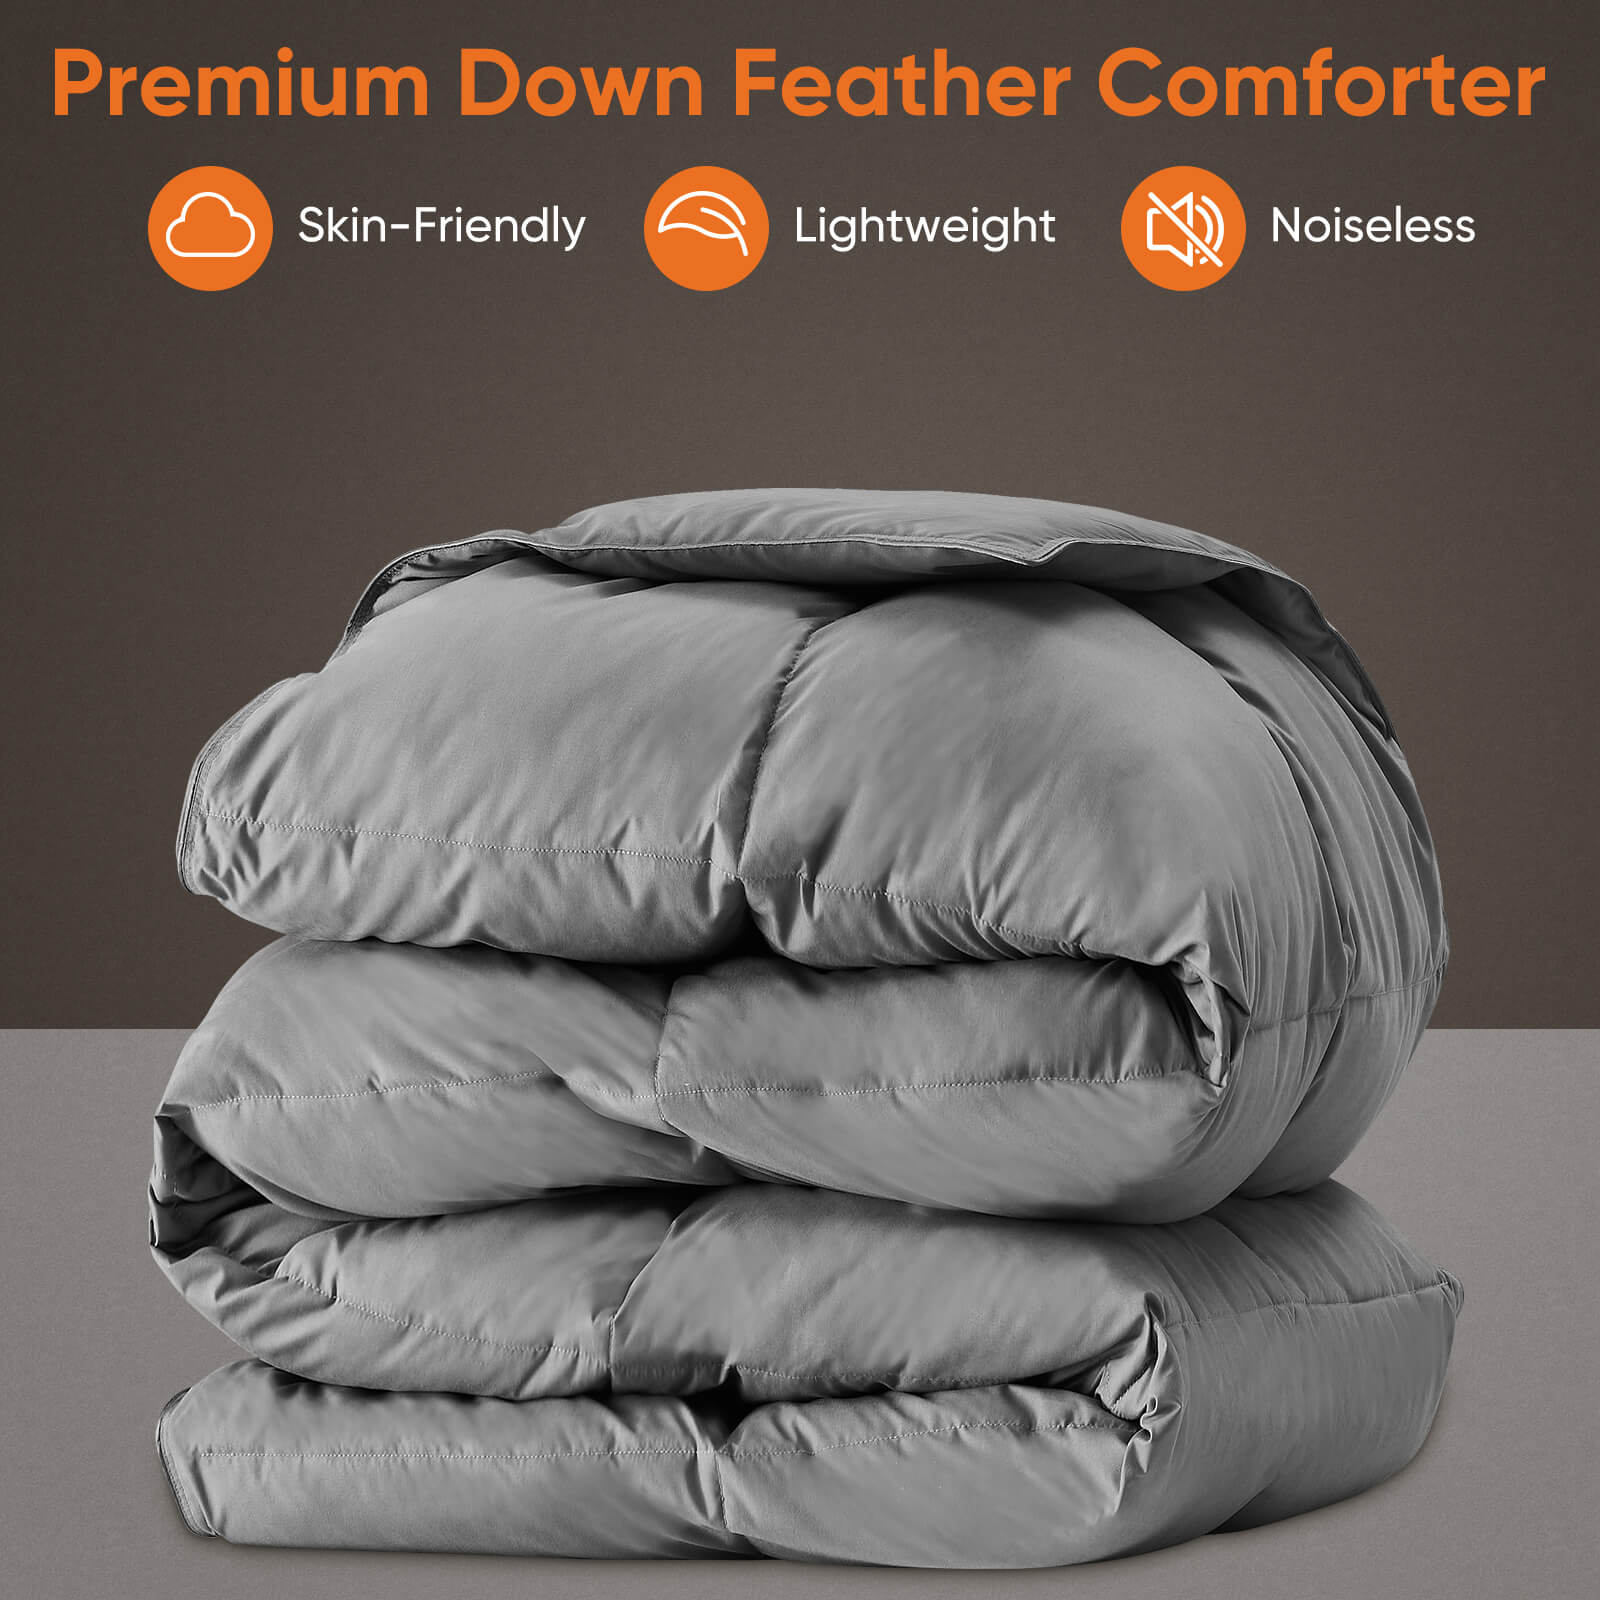 Fluffy Duvet Insert, Hotel Feather Comforter, Lightweight Down Alternative